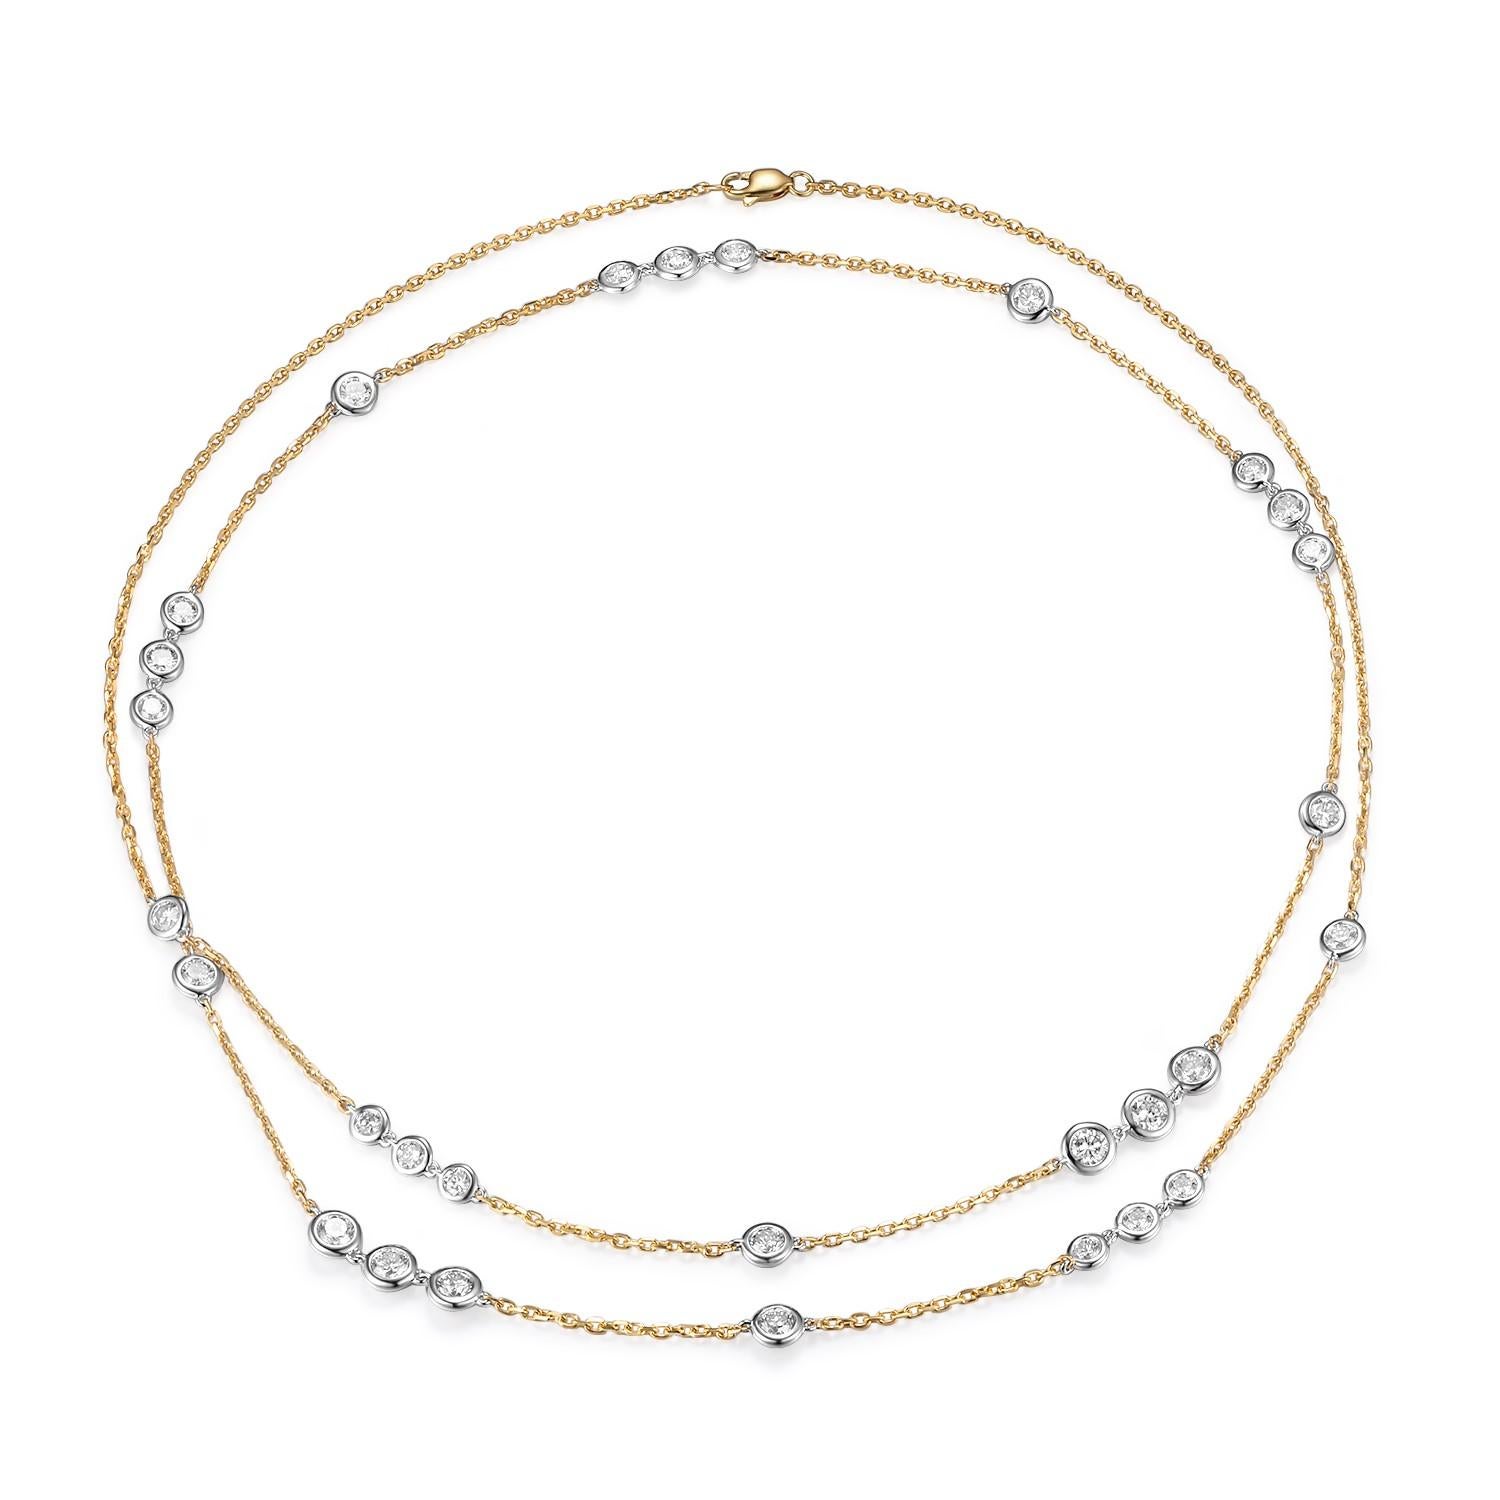 Die 4,12 Karat schwere 29-Stationen-Diamanten-Halskette ist ein atemberaubendes Schmuckstück, das Eleganz und Raffinesse ausstrahlt. Dieses mit viel Liebe zum Detail gefertigte Collier besteht aus insgesamt 4,12 Karat funkelnden Diamanten, die in 18